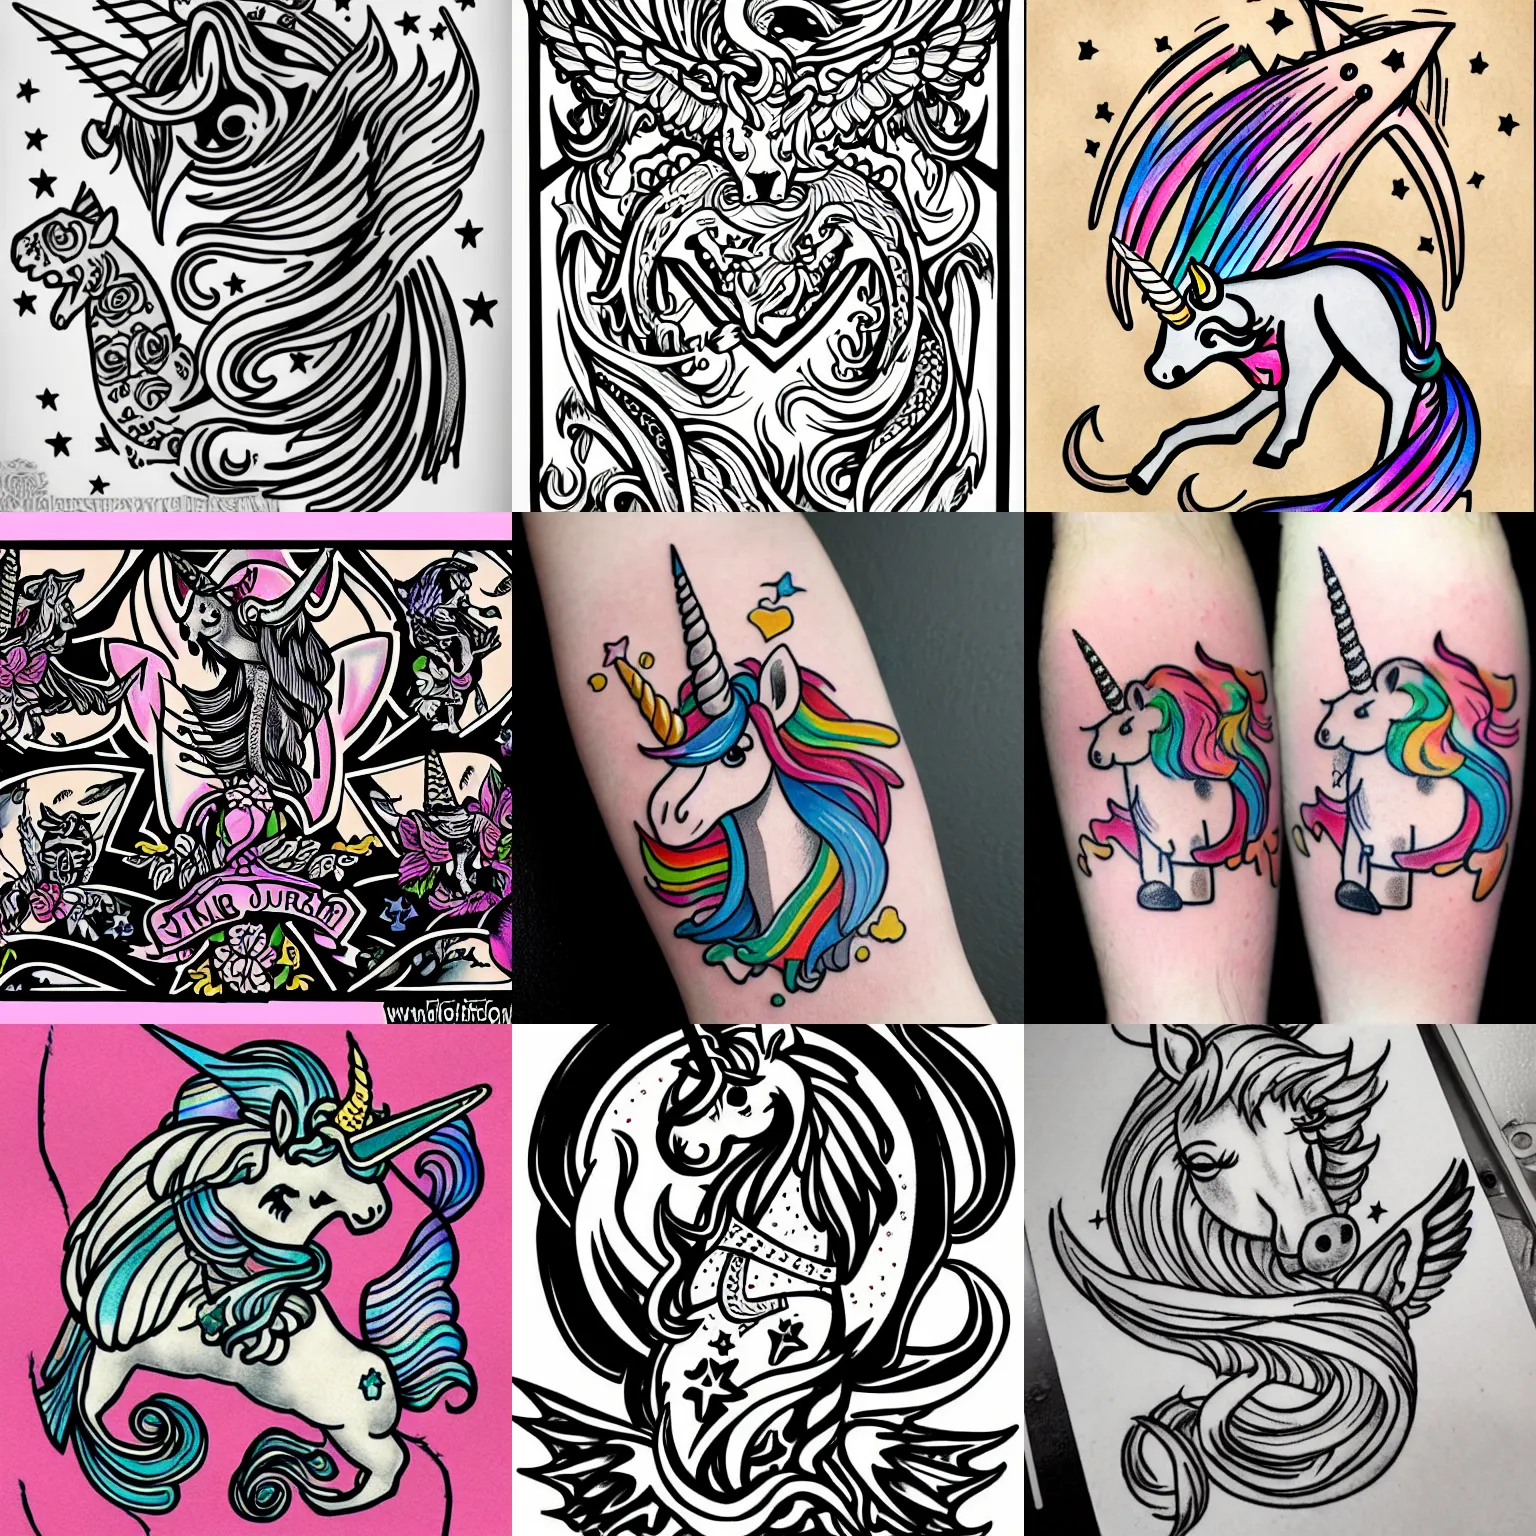 Prompt: unicorn tattoo, sailor jerry tattoo flash